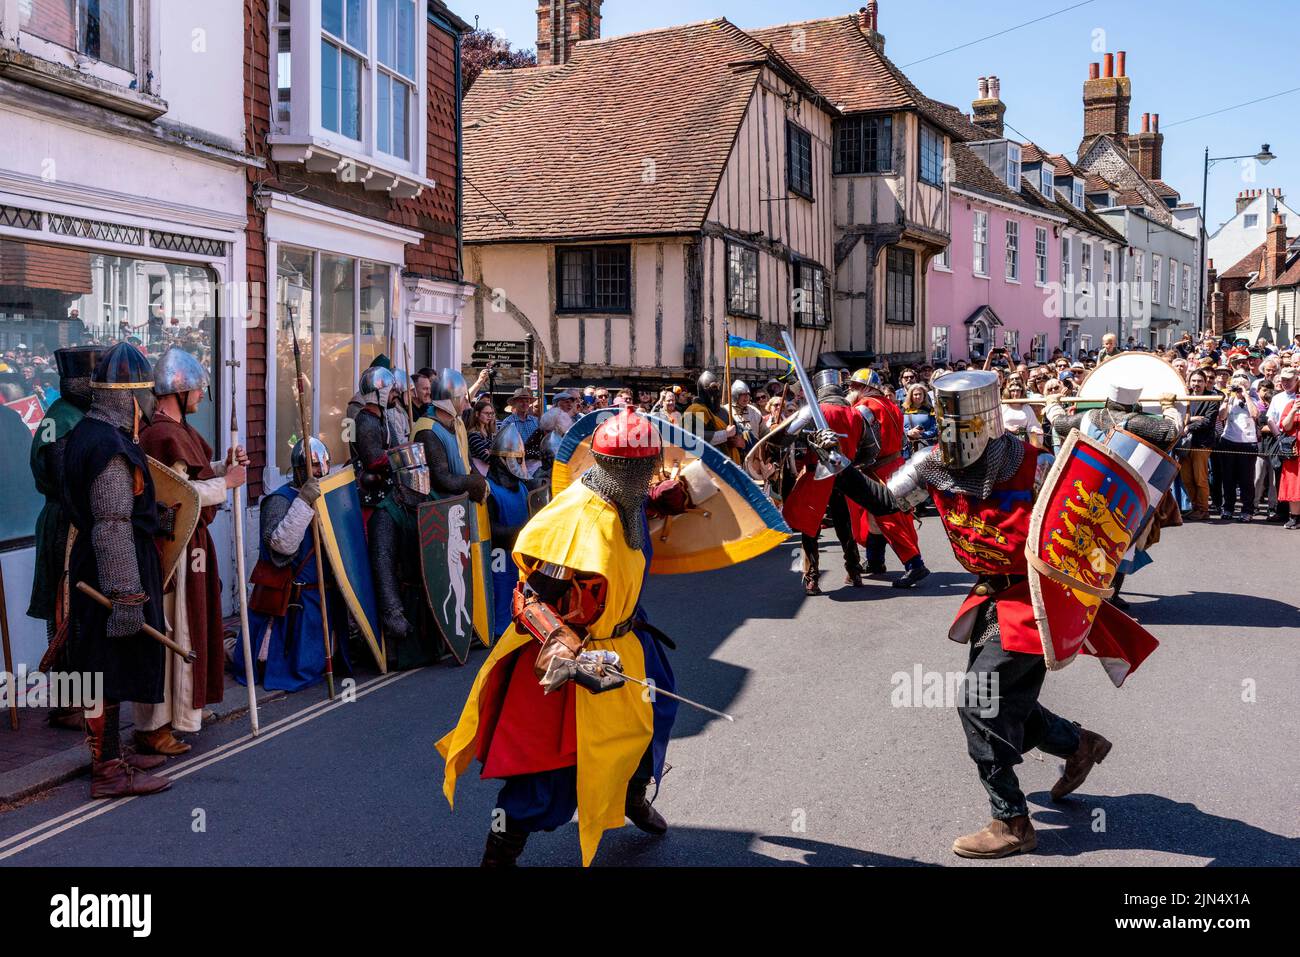 Las personas vestidas con trajes medievales participan en Una re-consagración de la Batalla de Lewes, Lewes, East Sussex, Reino Unido, del siglo 13th. Foto de stock